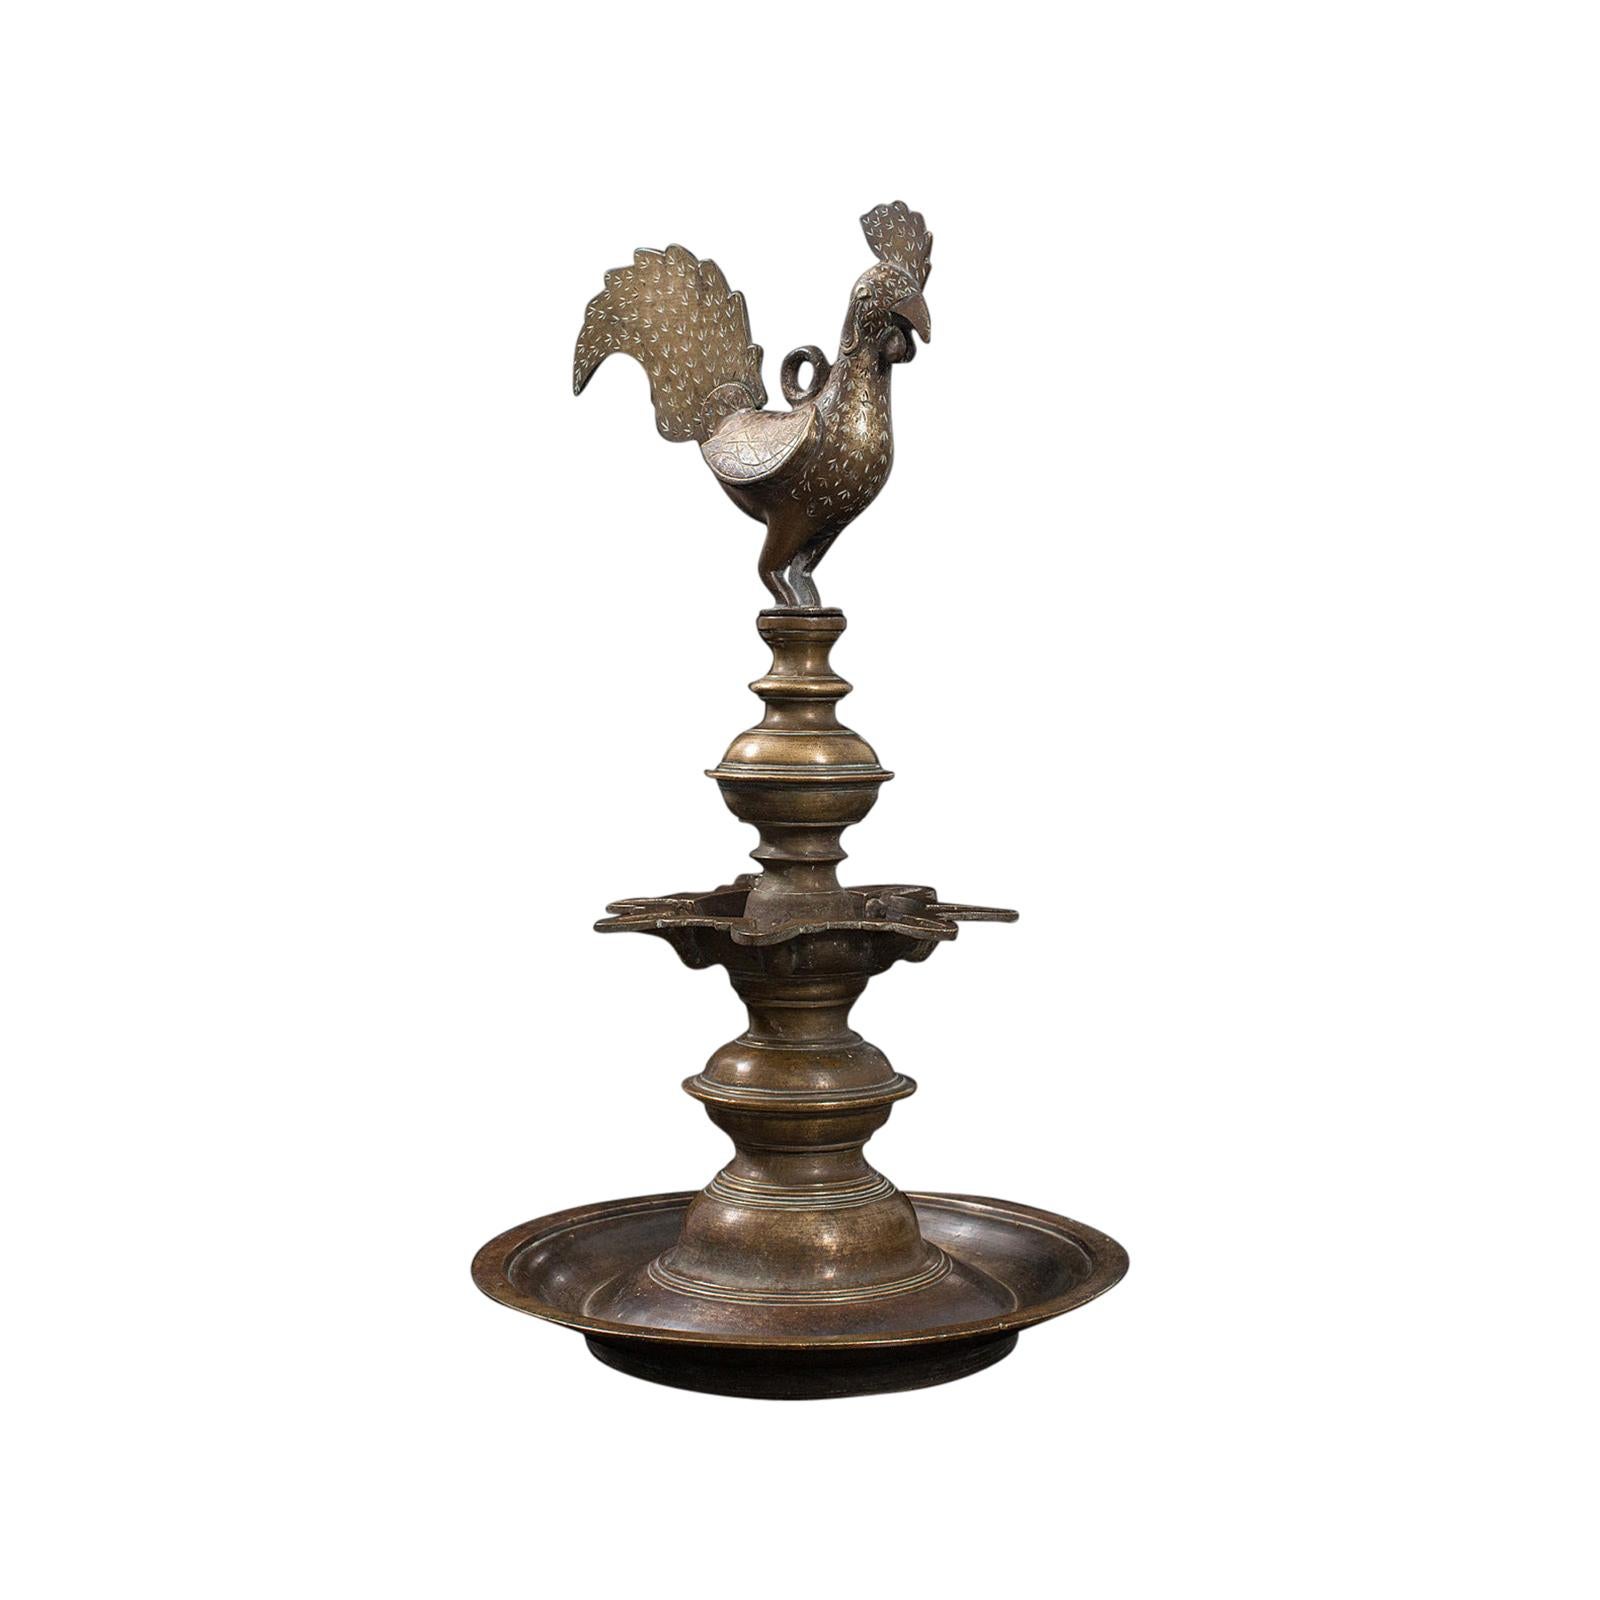 Antique Deccan Oil Lamp, Indian, Bronze, Hamsa, Bird, Late 19th Century